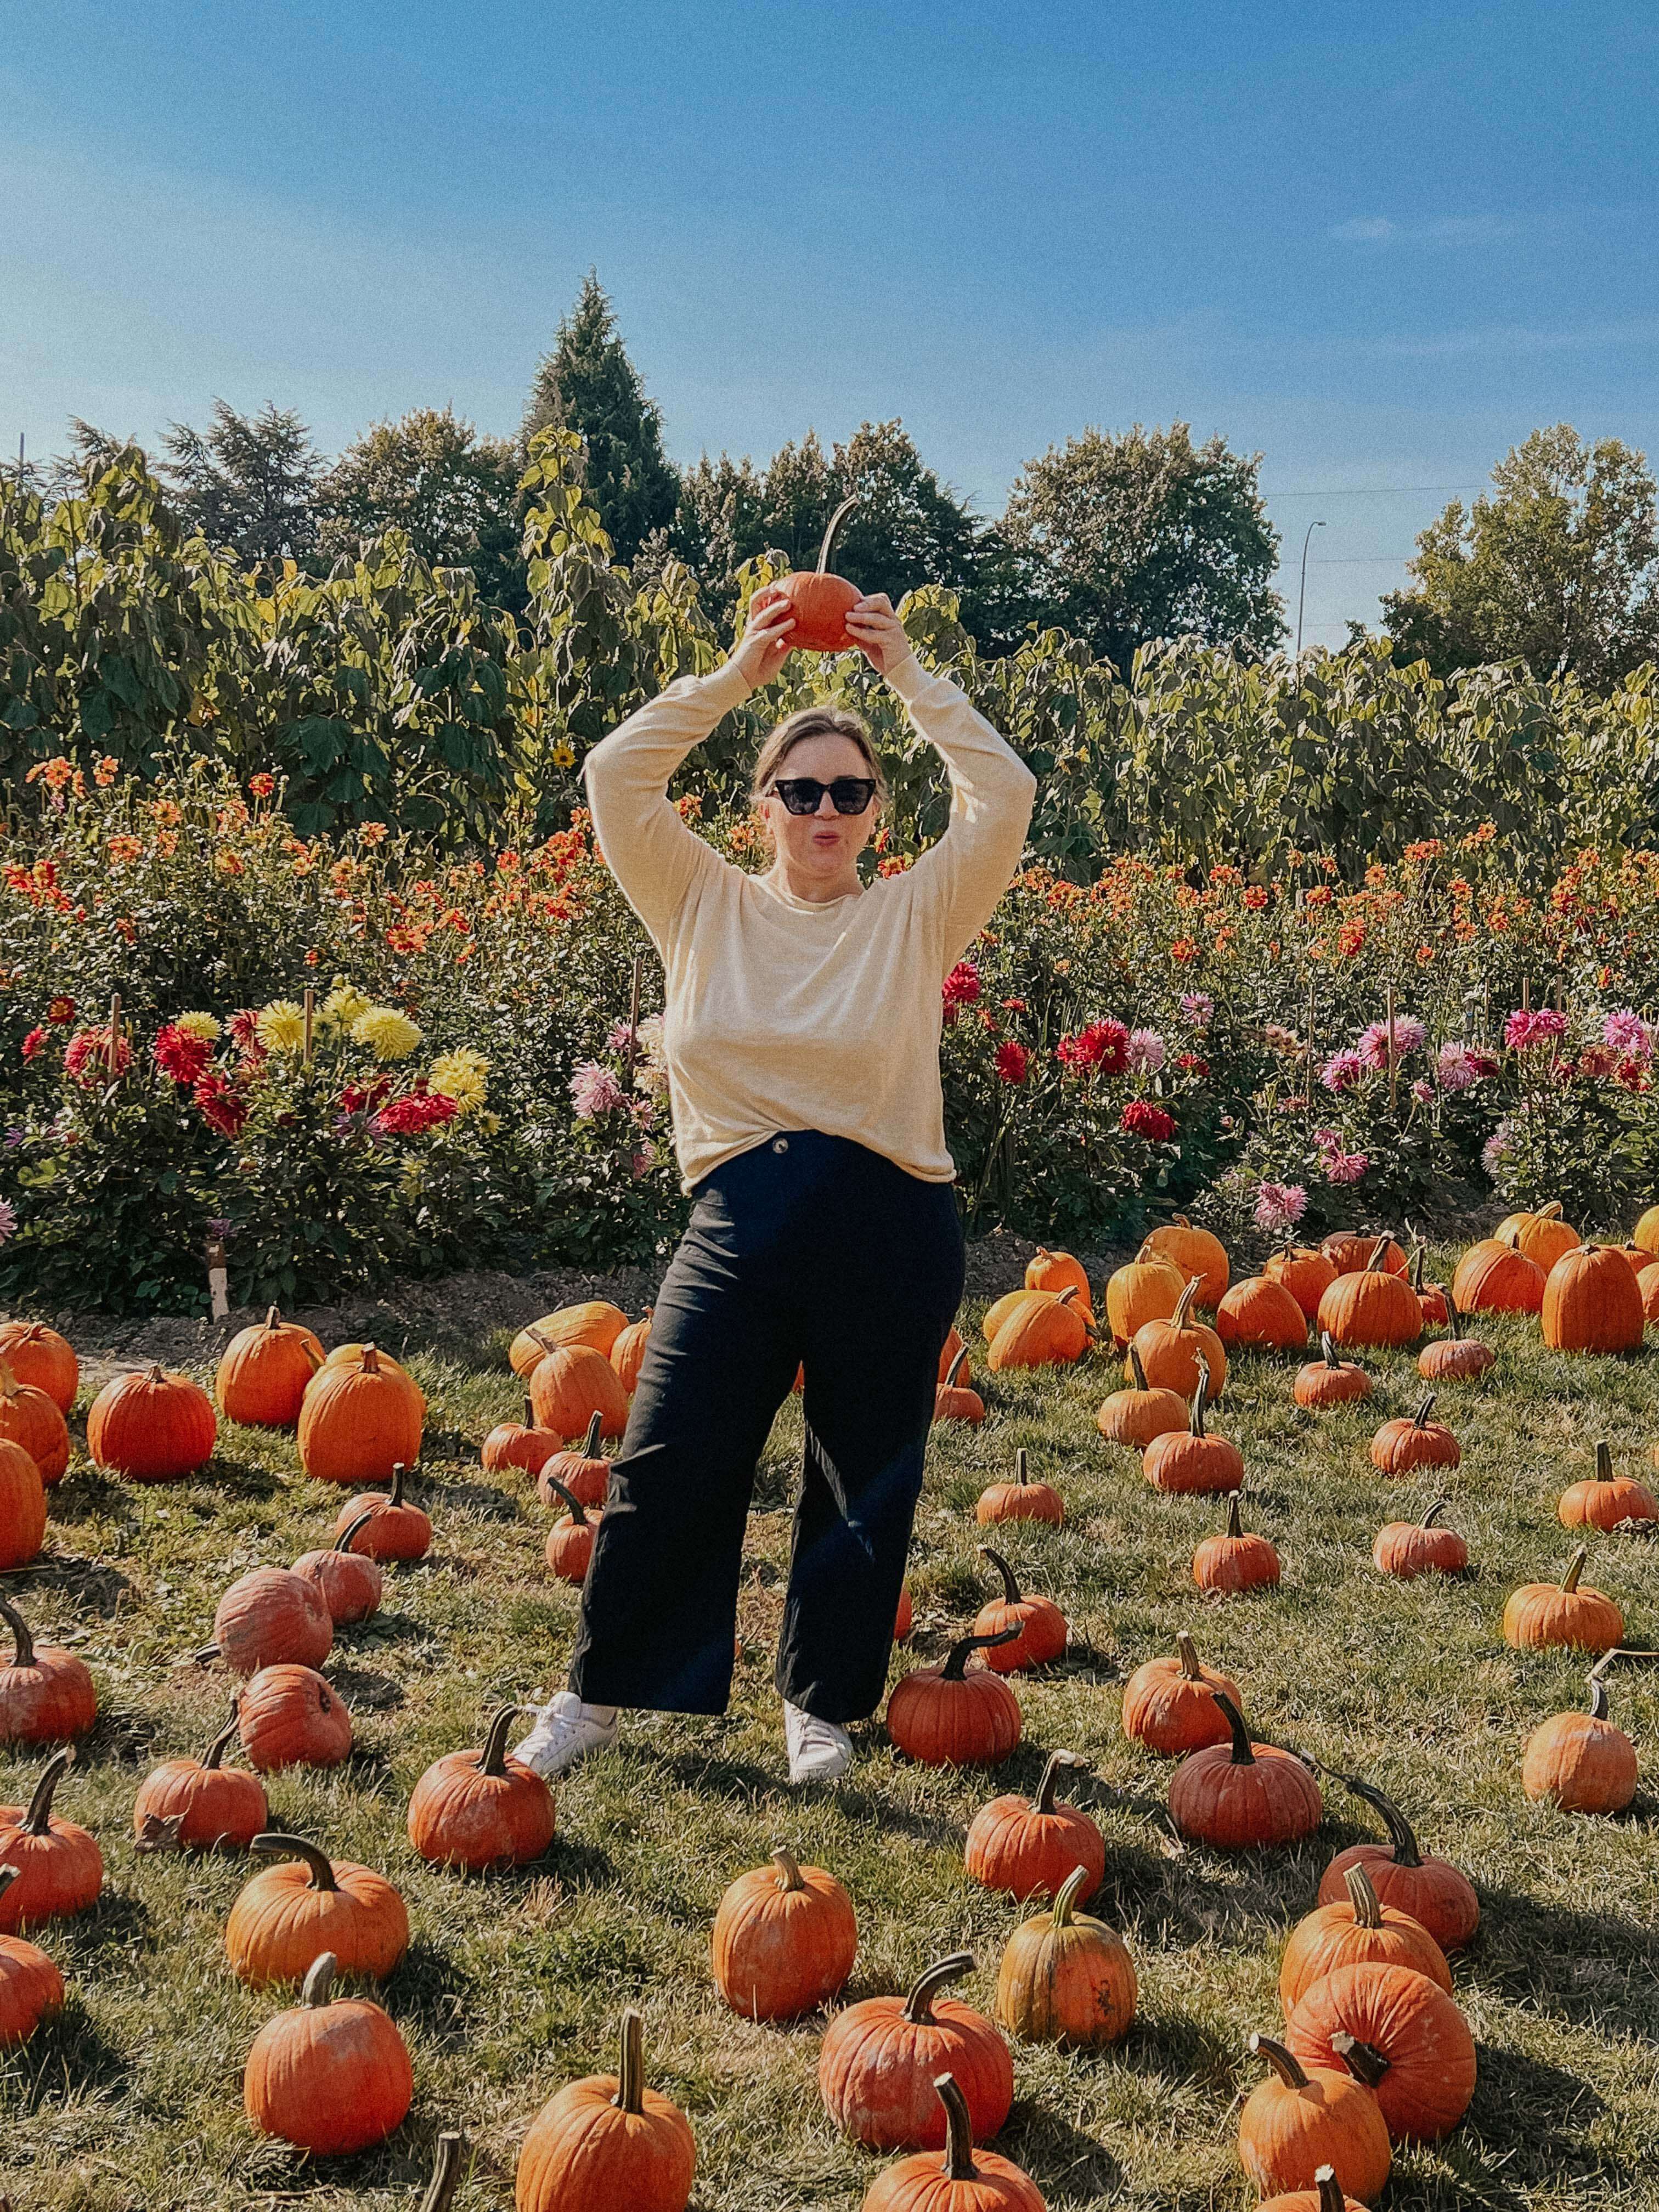 Woman holding pumpkin in pumpkin patch